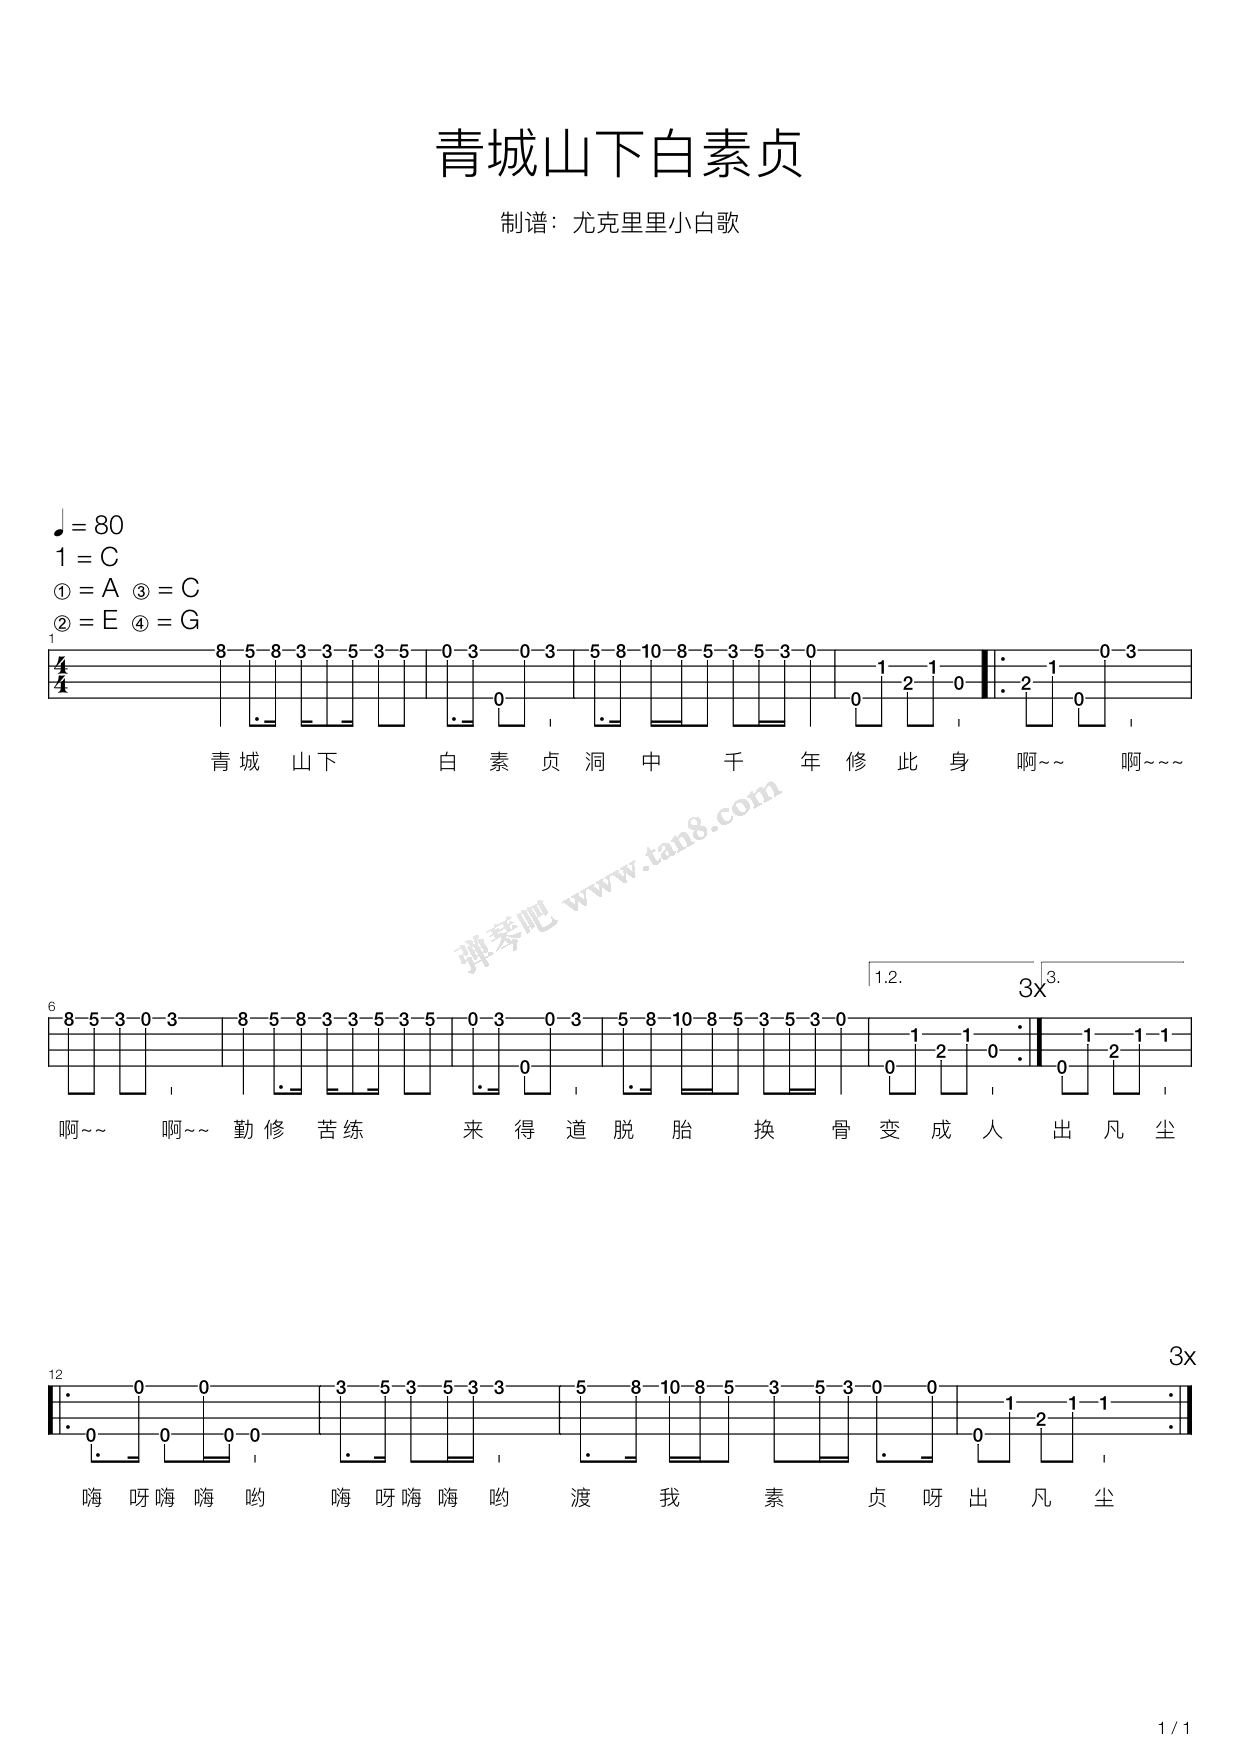 渡情-新白娘子传奇片尾曲五线谱预览1-钢琴谱文件（五线谱、双手简谱、数字谱、Midi、PDF）免费下载